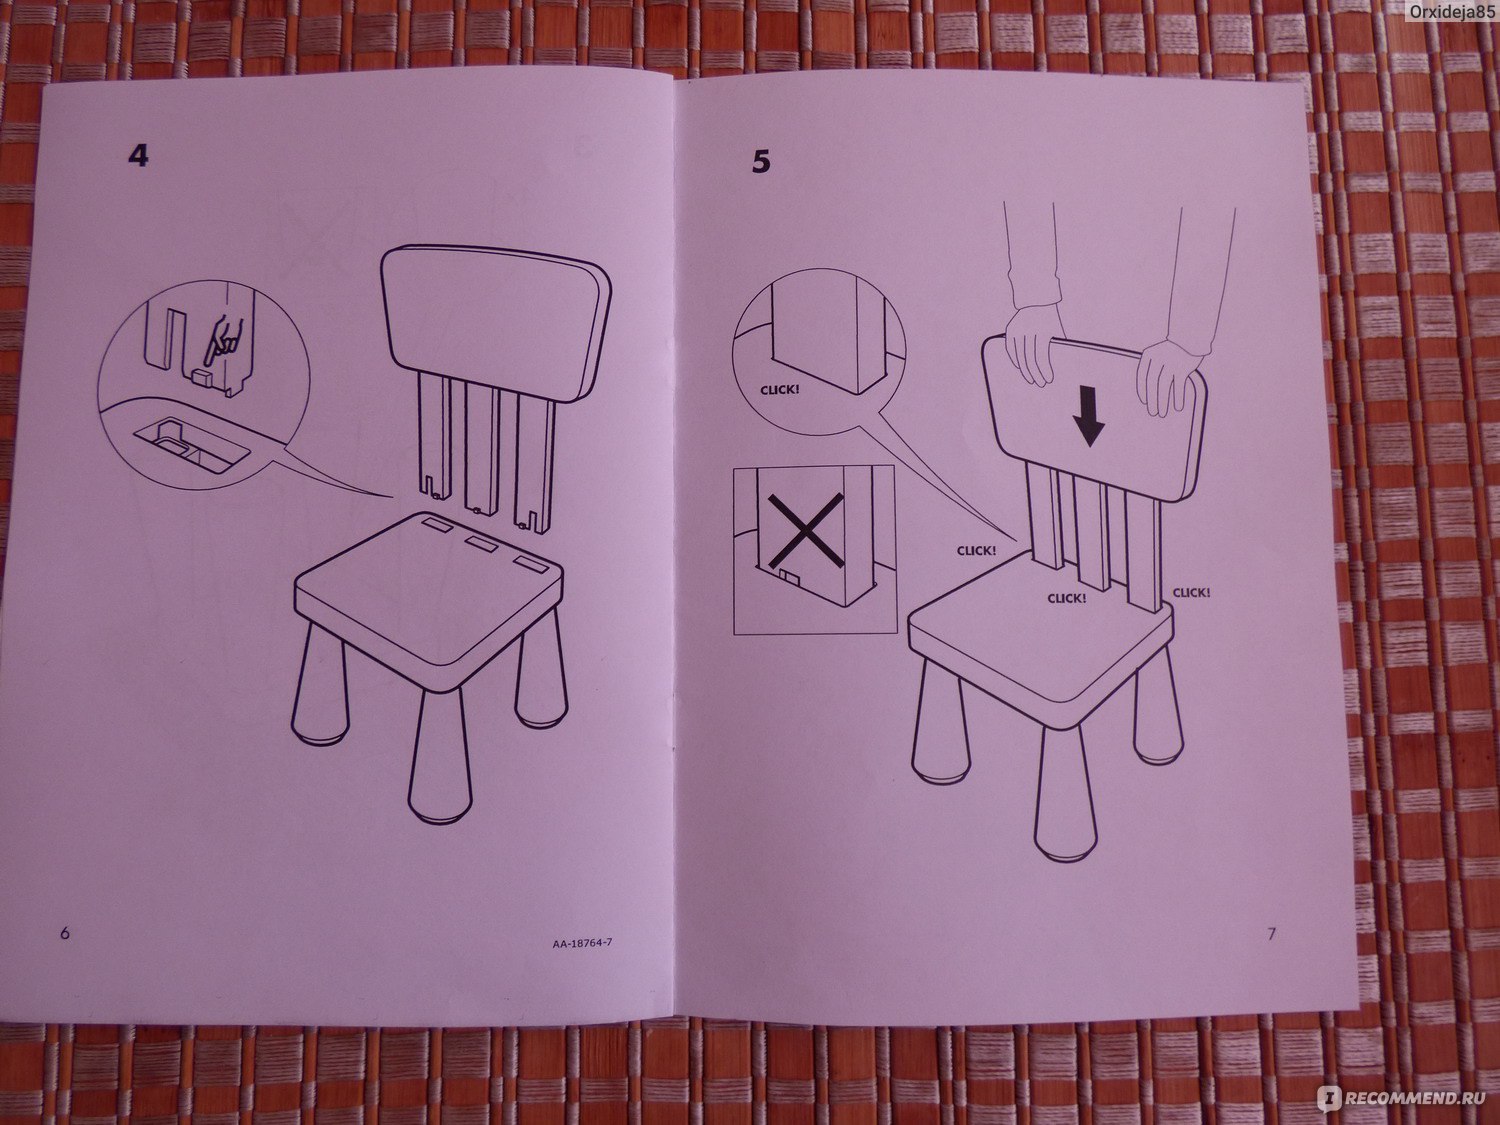 Схема сборки стула ученического регулируемого по высоте №2-4 №3-5 №4-6